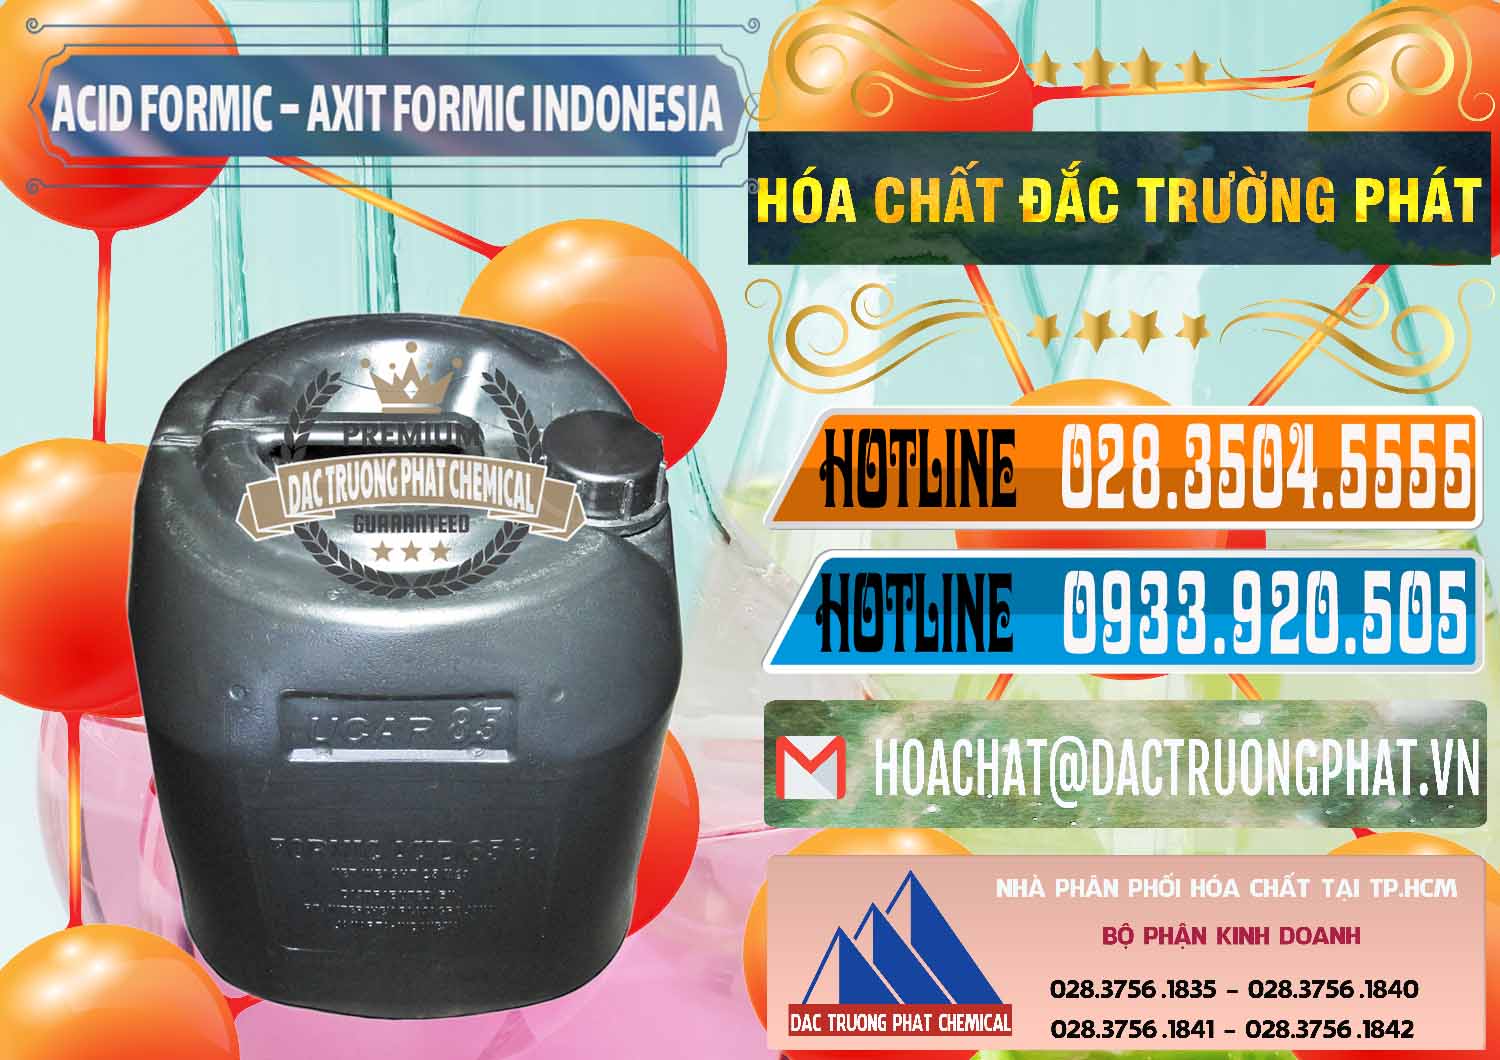 Chuyên cung ứng - bán Acid Formic - Axit Formic Indonesia - 0026 - Cty chuyên kinh doanh _ phân phối hóa chất tại TP.HCM - stmp.net